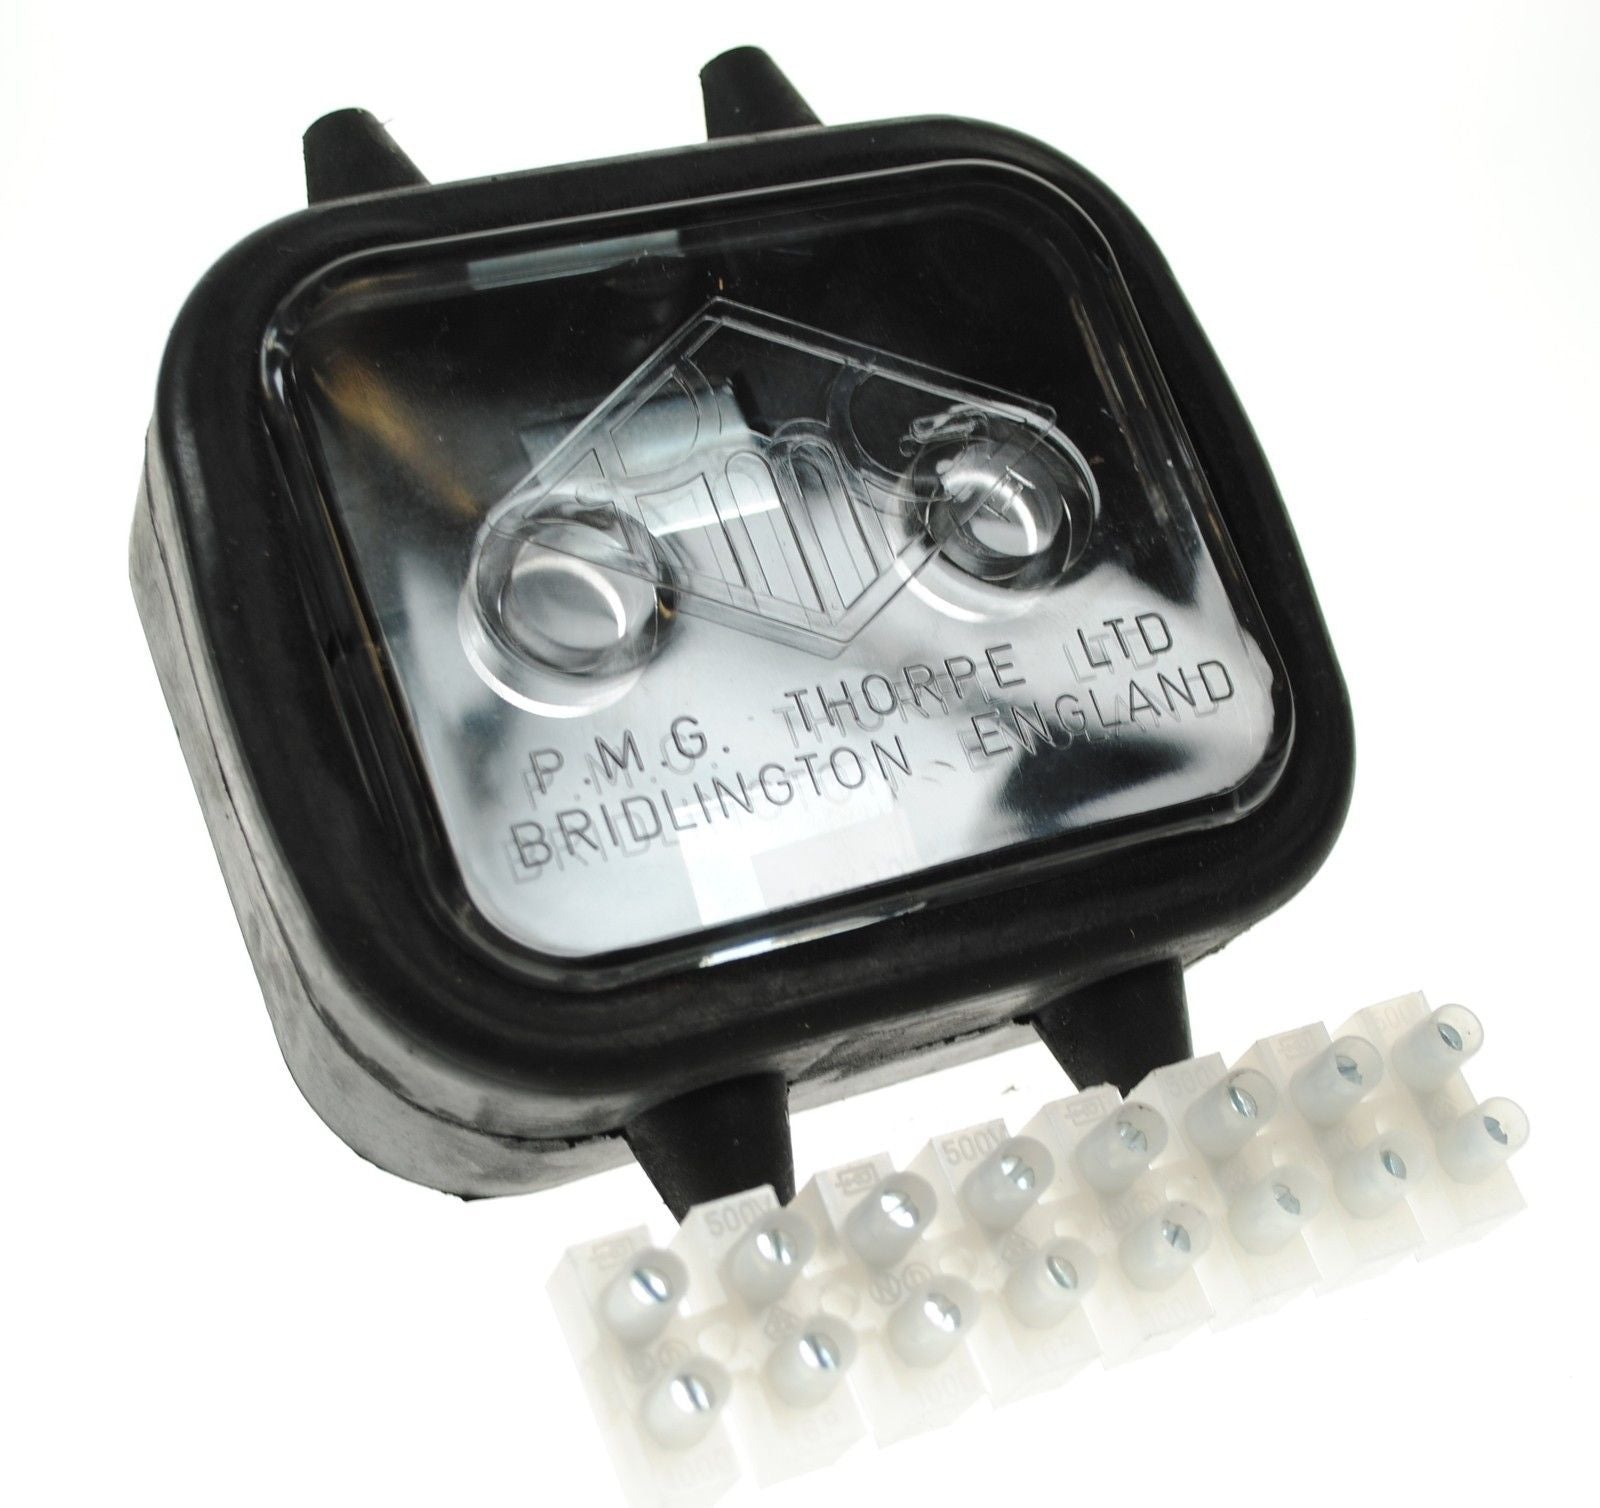 Britax gummikoblingsboks med skruekontakter / 8-veis - sikringer og sikringsholdere - spo-cs-deaktivert - spo-standard - spo-ena